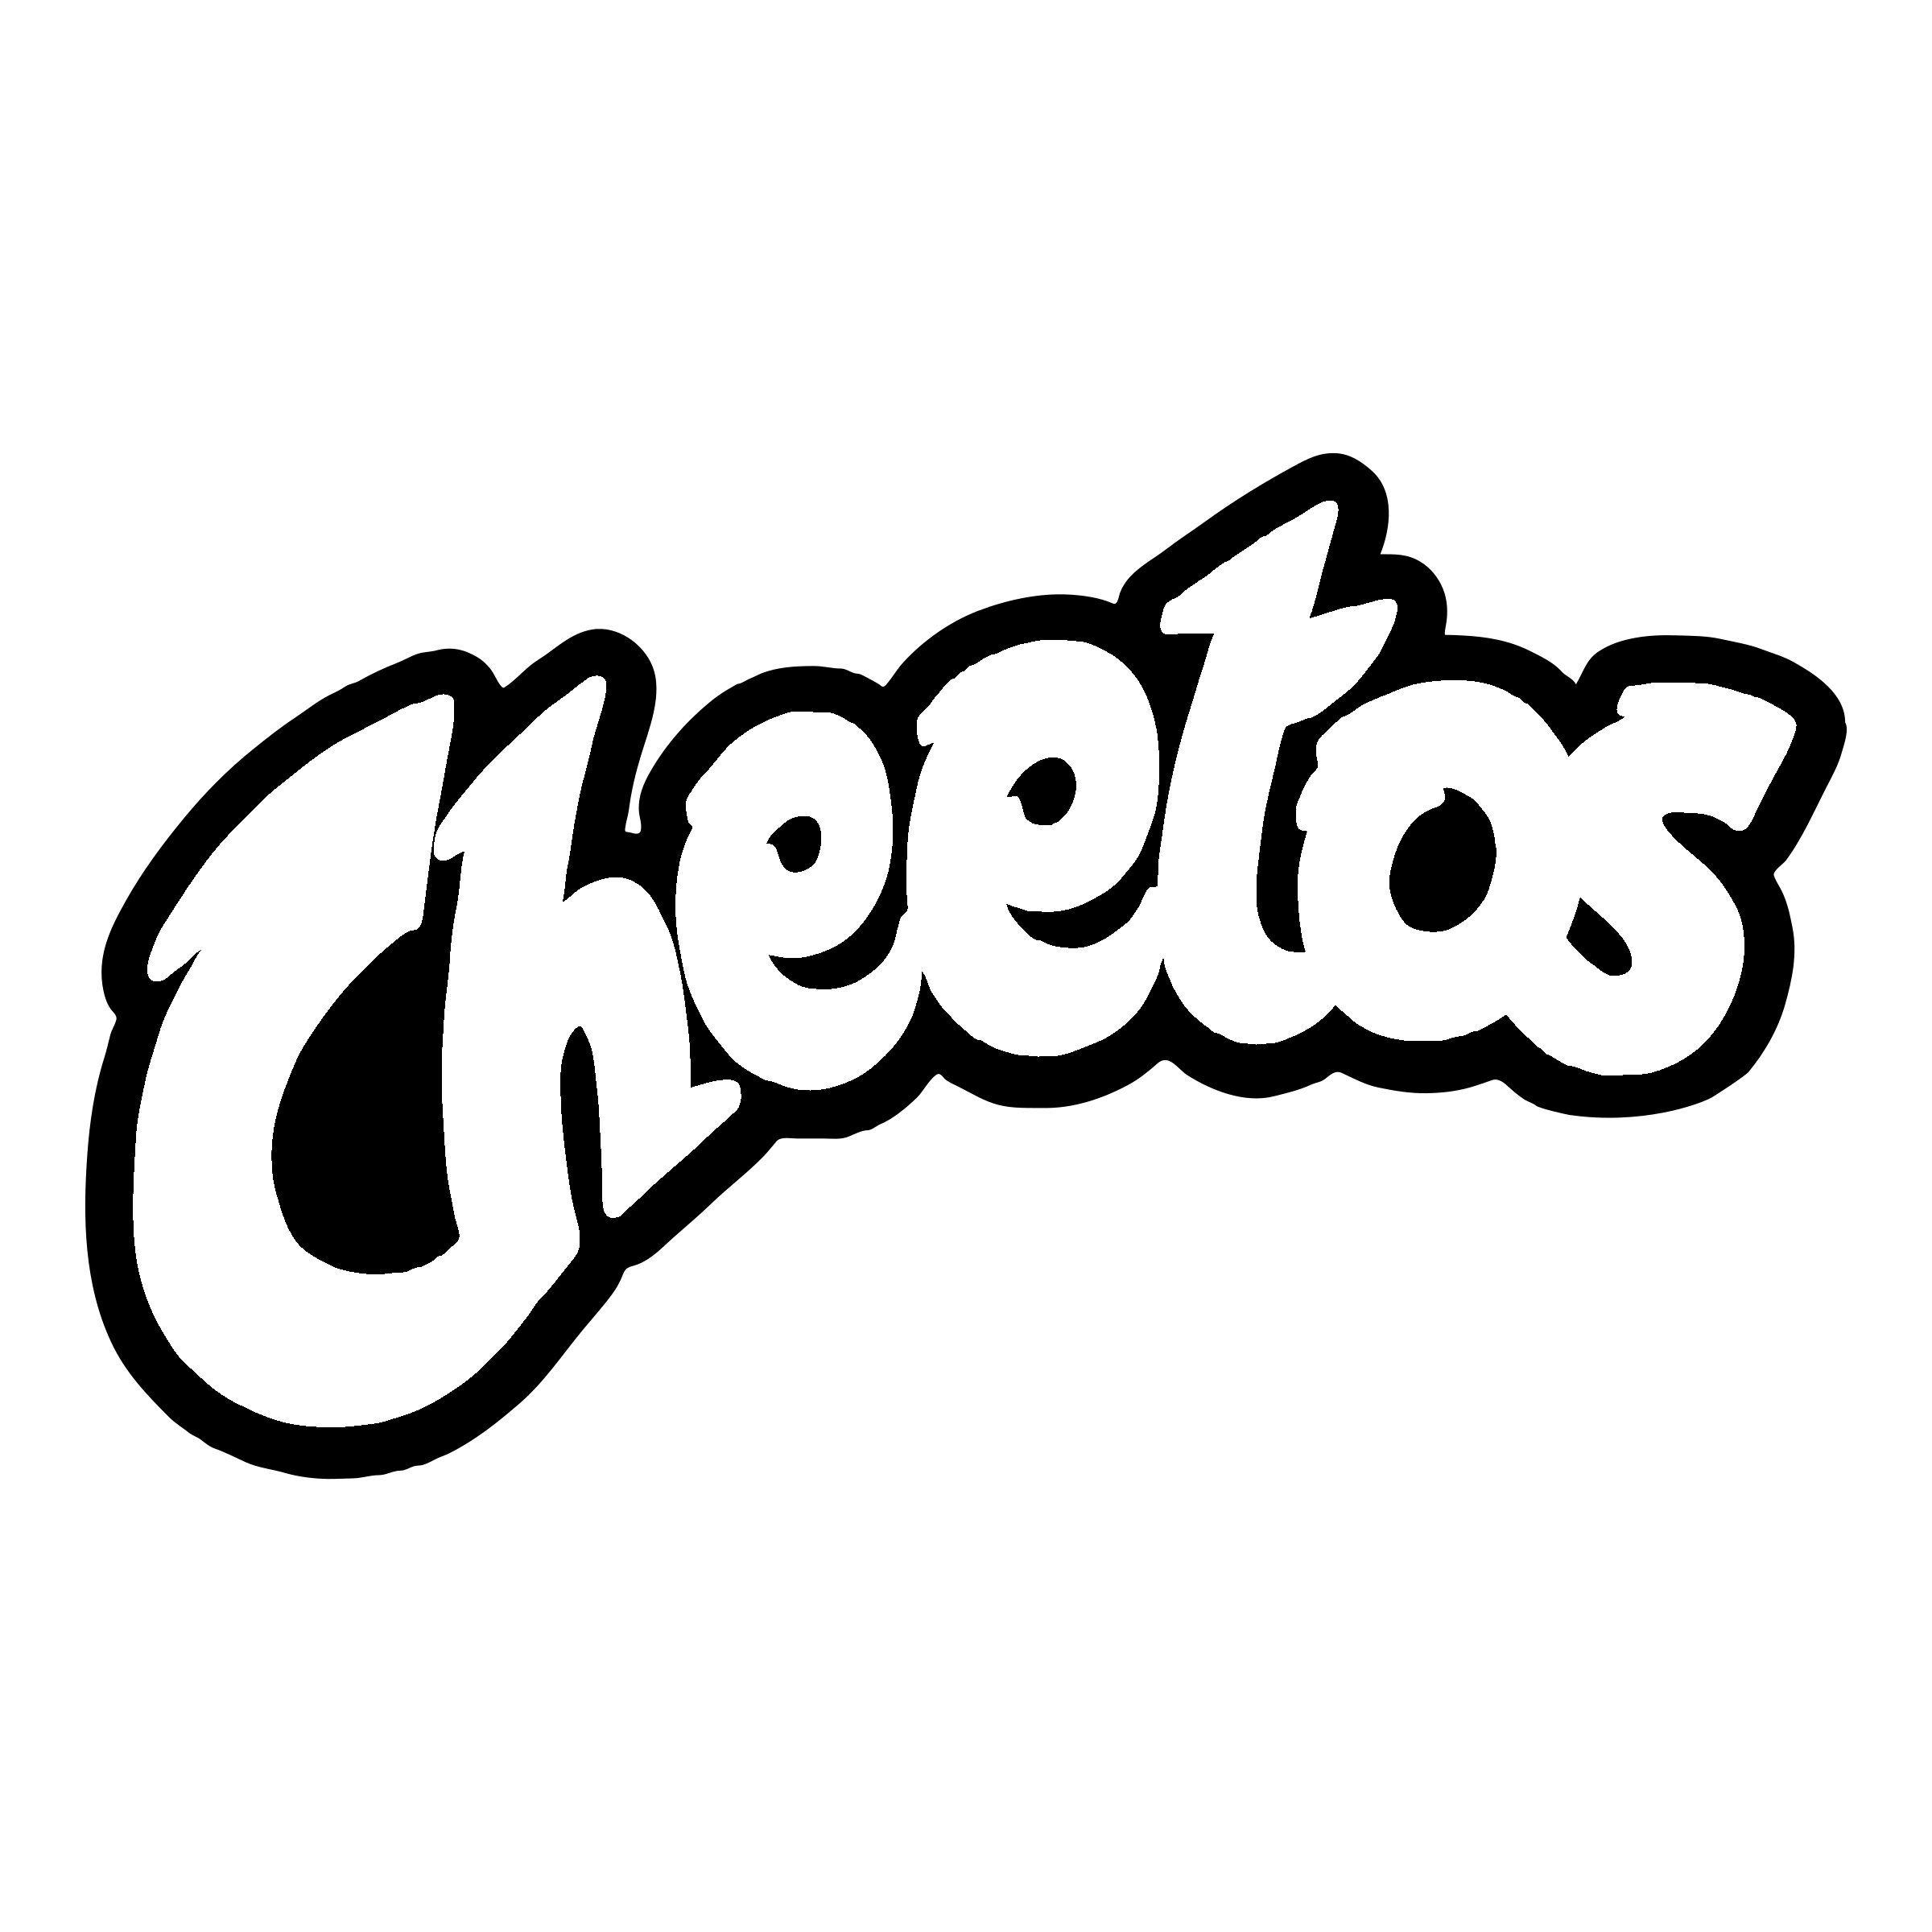 Hot Cheetos PNG Image